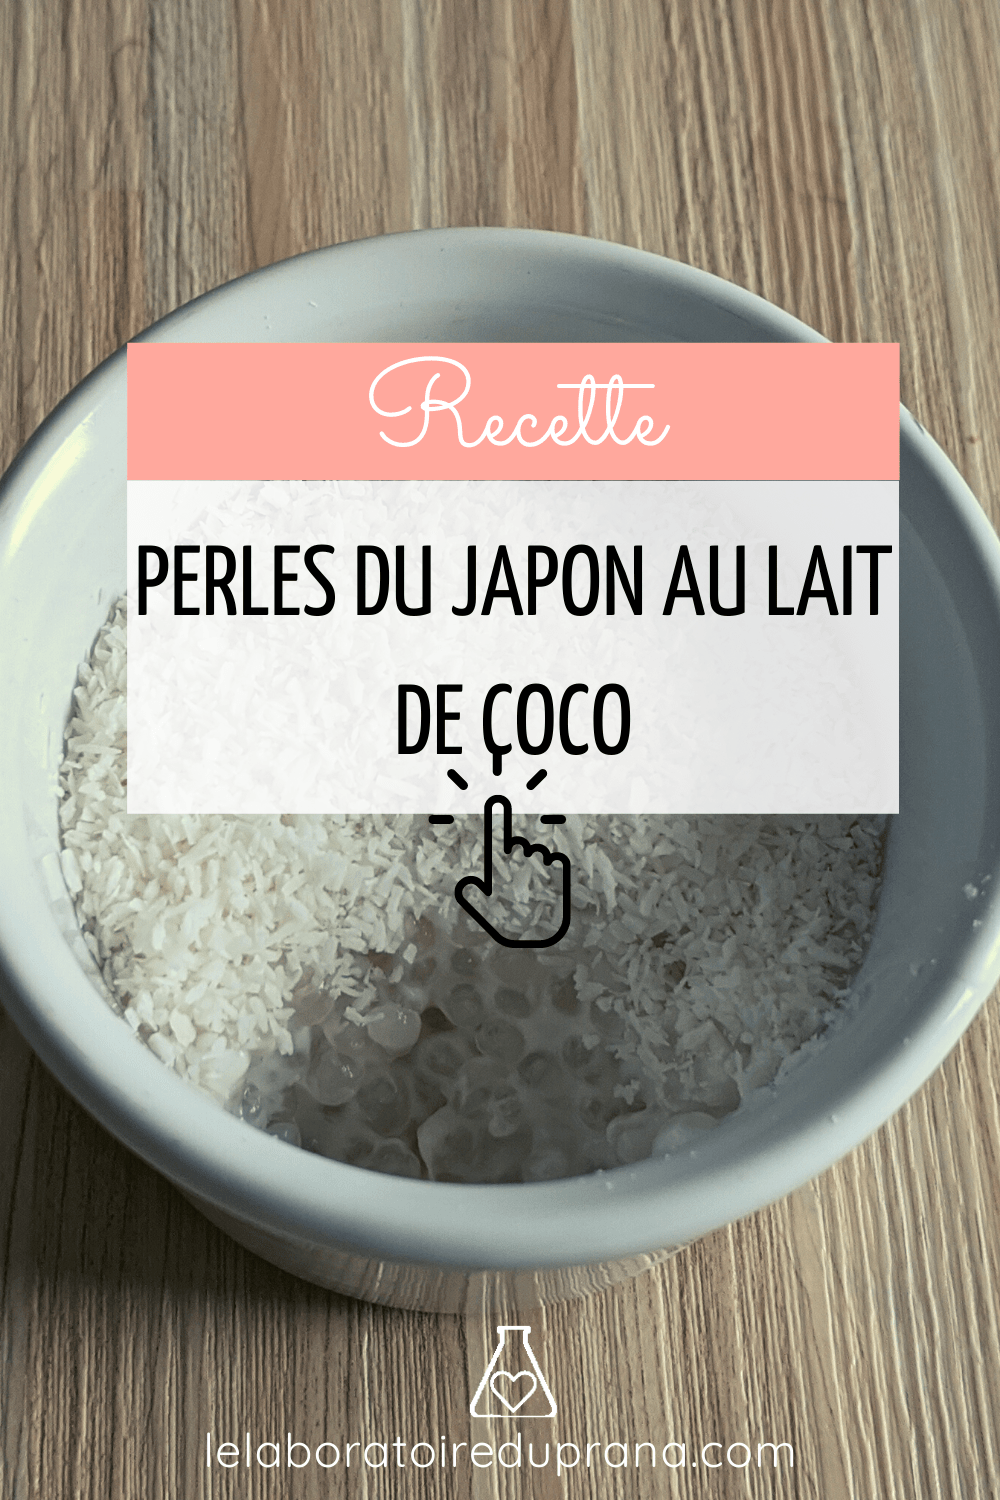 Recette perles du japon au lait de coco